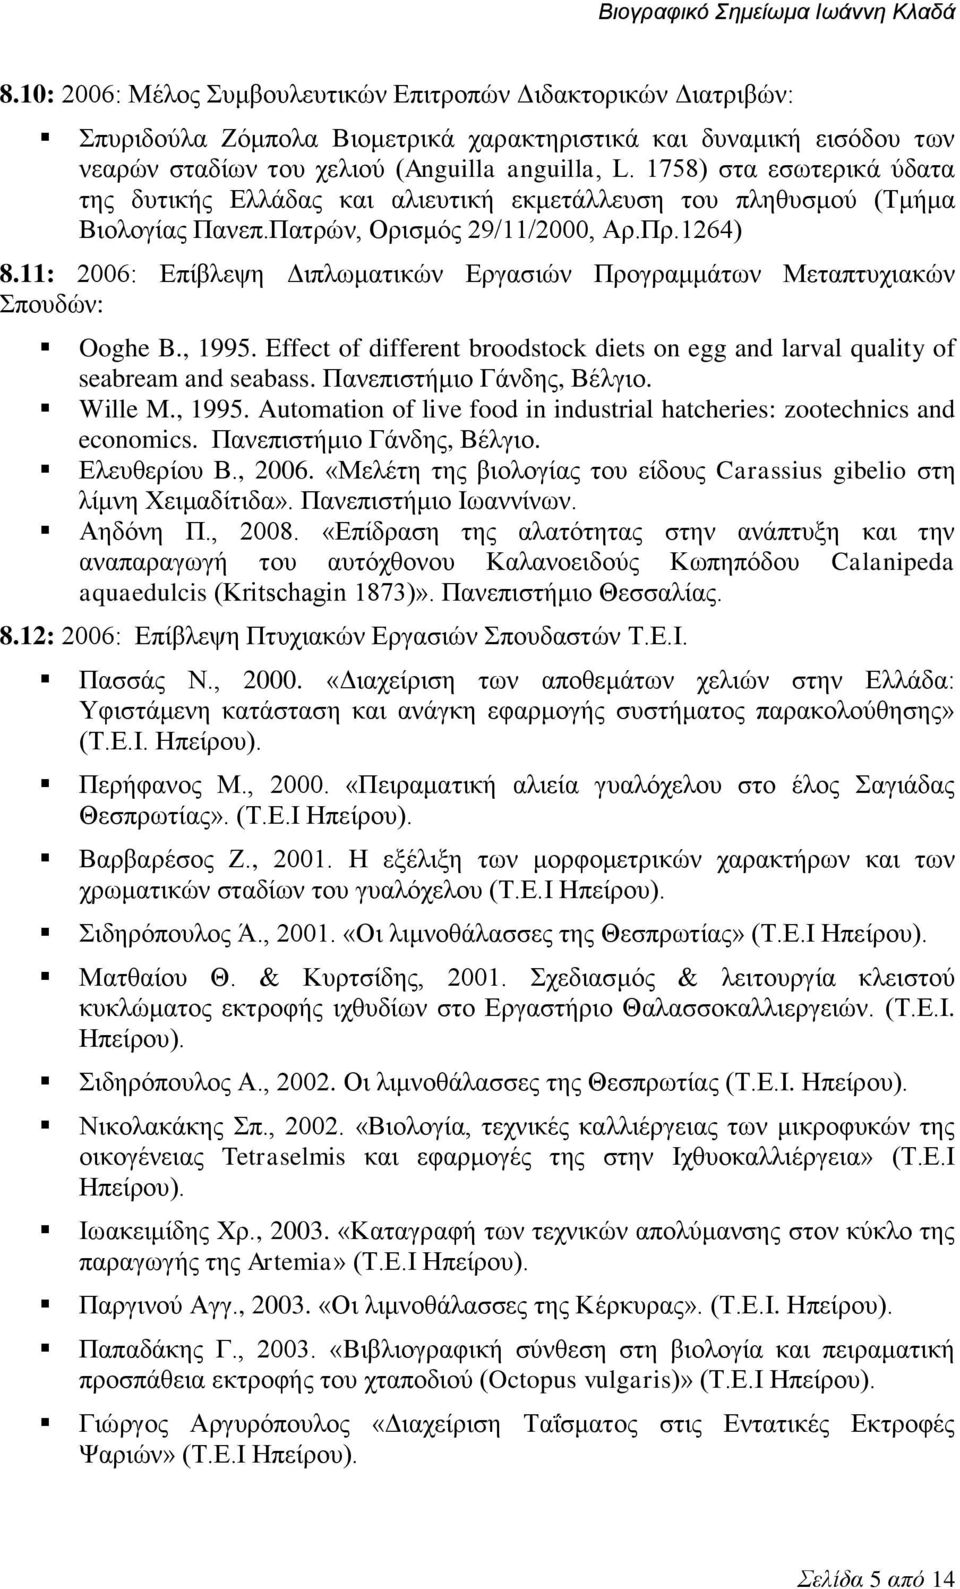 11: 2006: Επίβλεψη Διπλωματικών Εργασιών Προγραμμάτων Μεταπτυχιακών Σπουδών: Ooghe B., 1995. Effect of different broodstock diets on egg and larval quality of seabream and seabass.